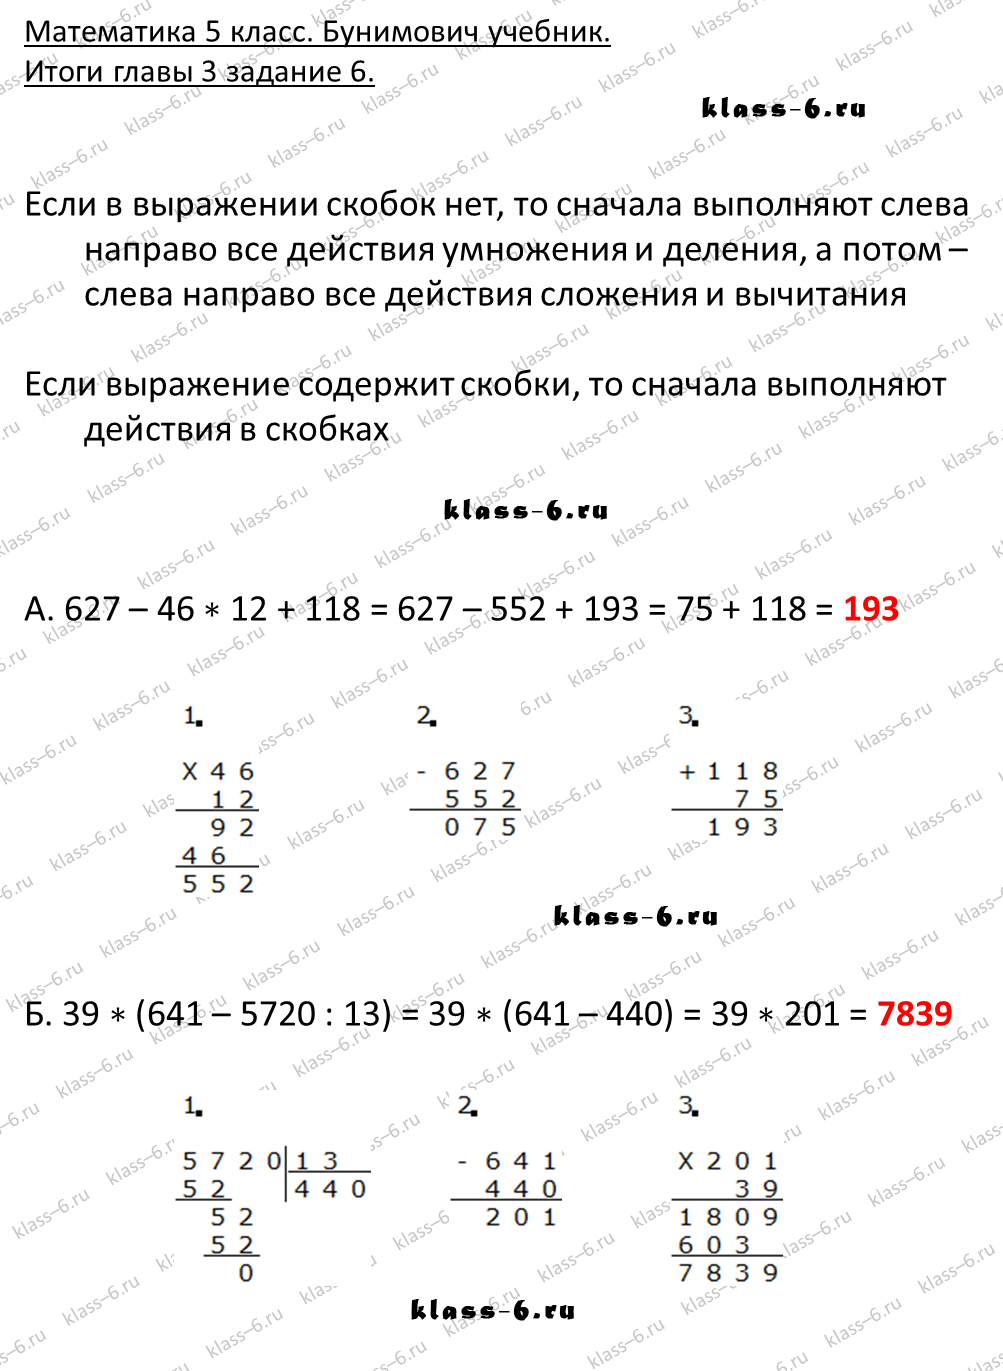 решебник и гдз по математике учебник Бунимович 5 класс итоги главы 3-6